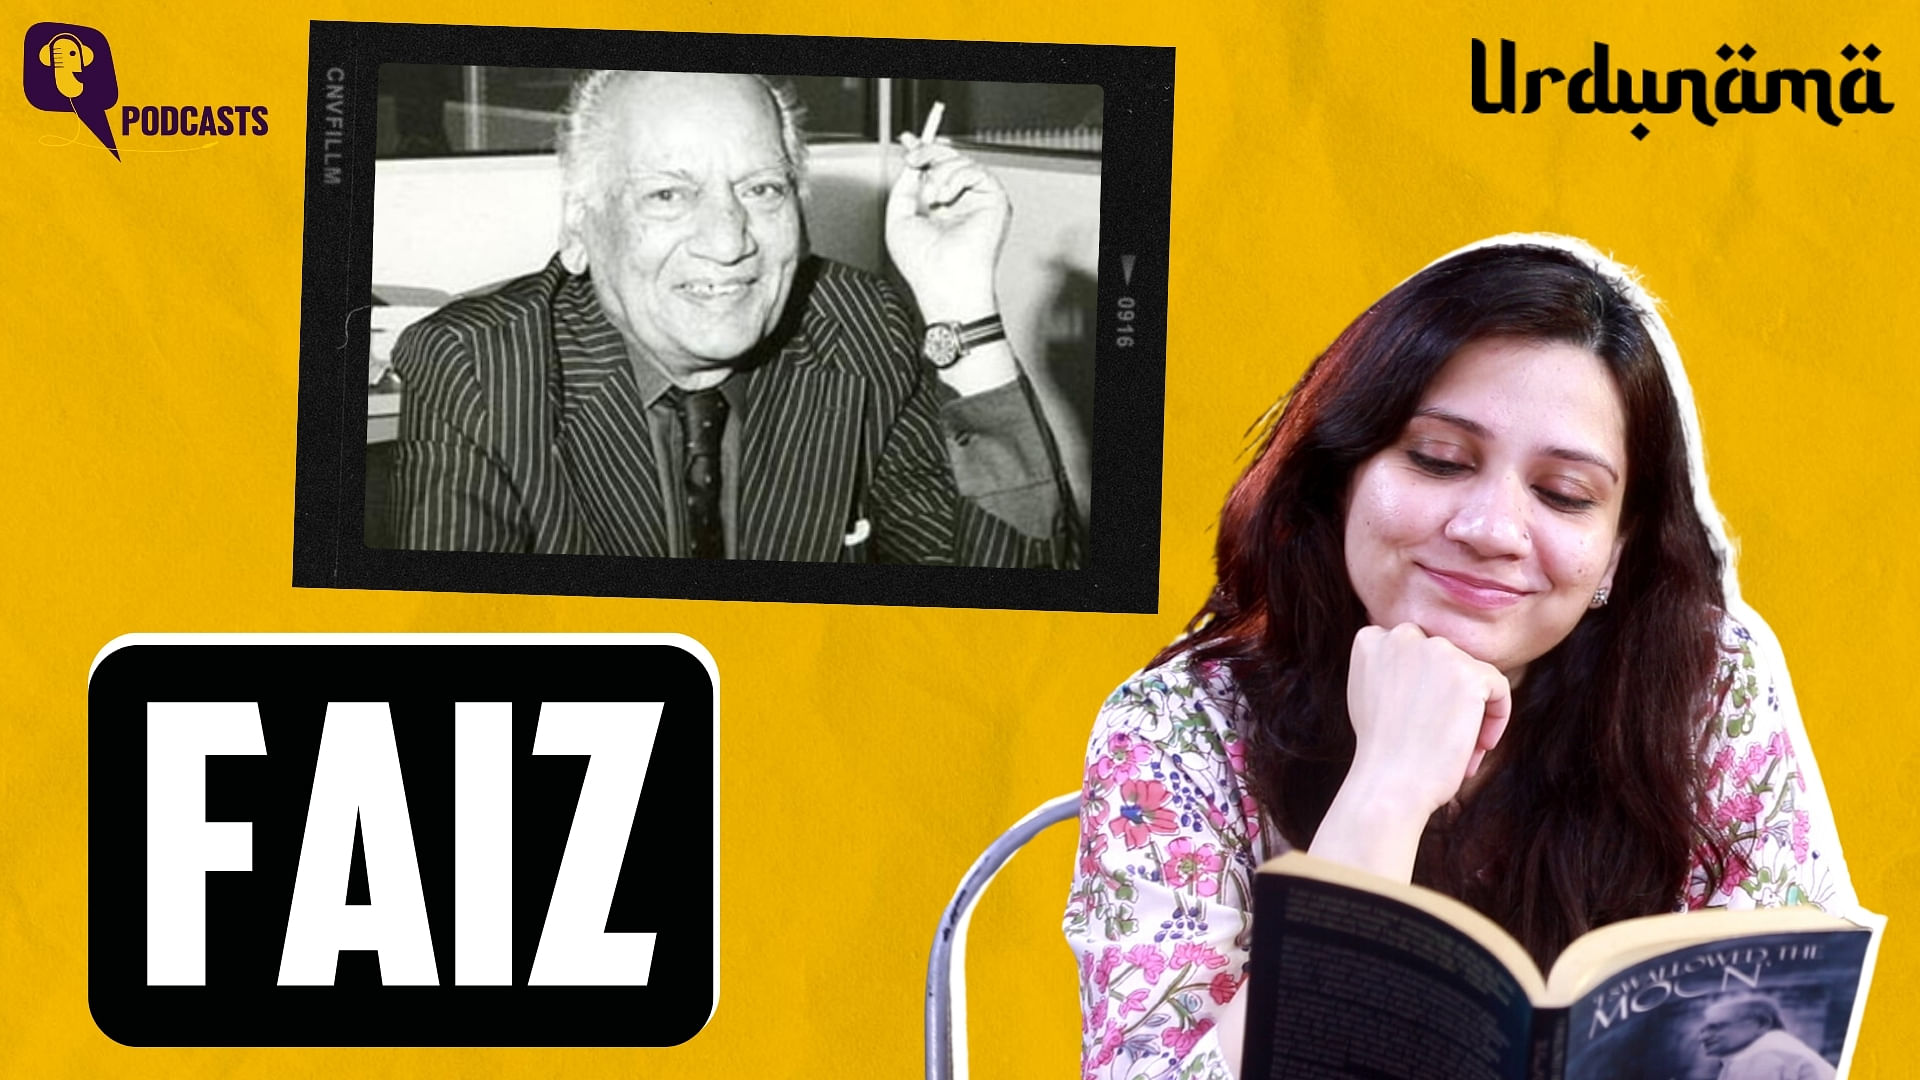 <div class="paragraphs"><p>In this episode of Urdunama, Fabeha talks about the poet Faiz Ahmad Faiz.</p></div>